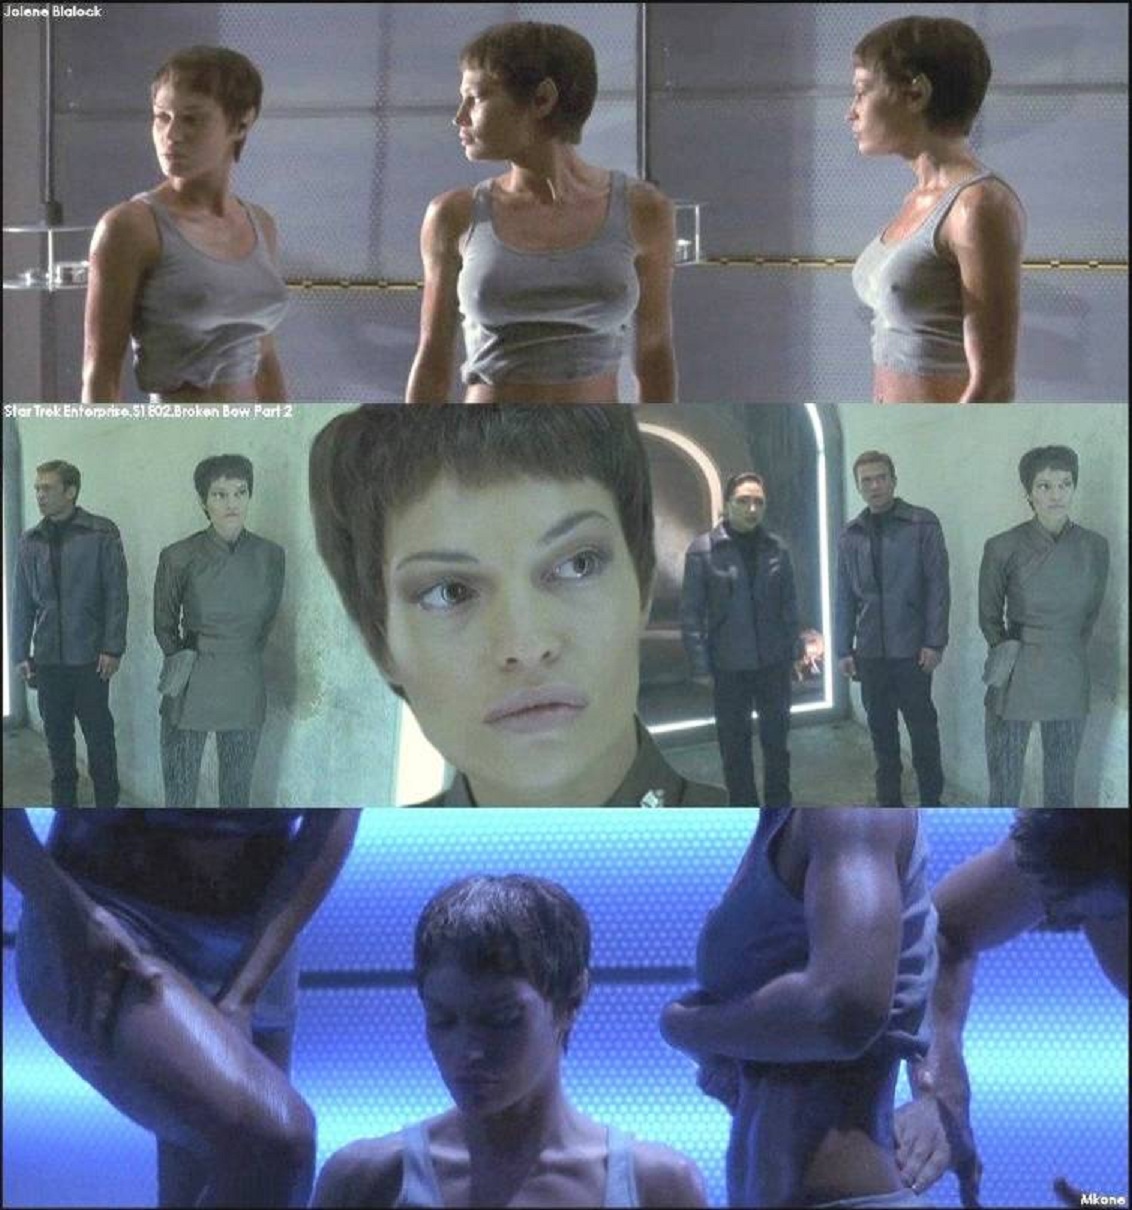 Naked Jolene Blalock In Star Trek Enterprise